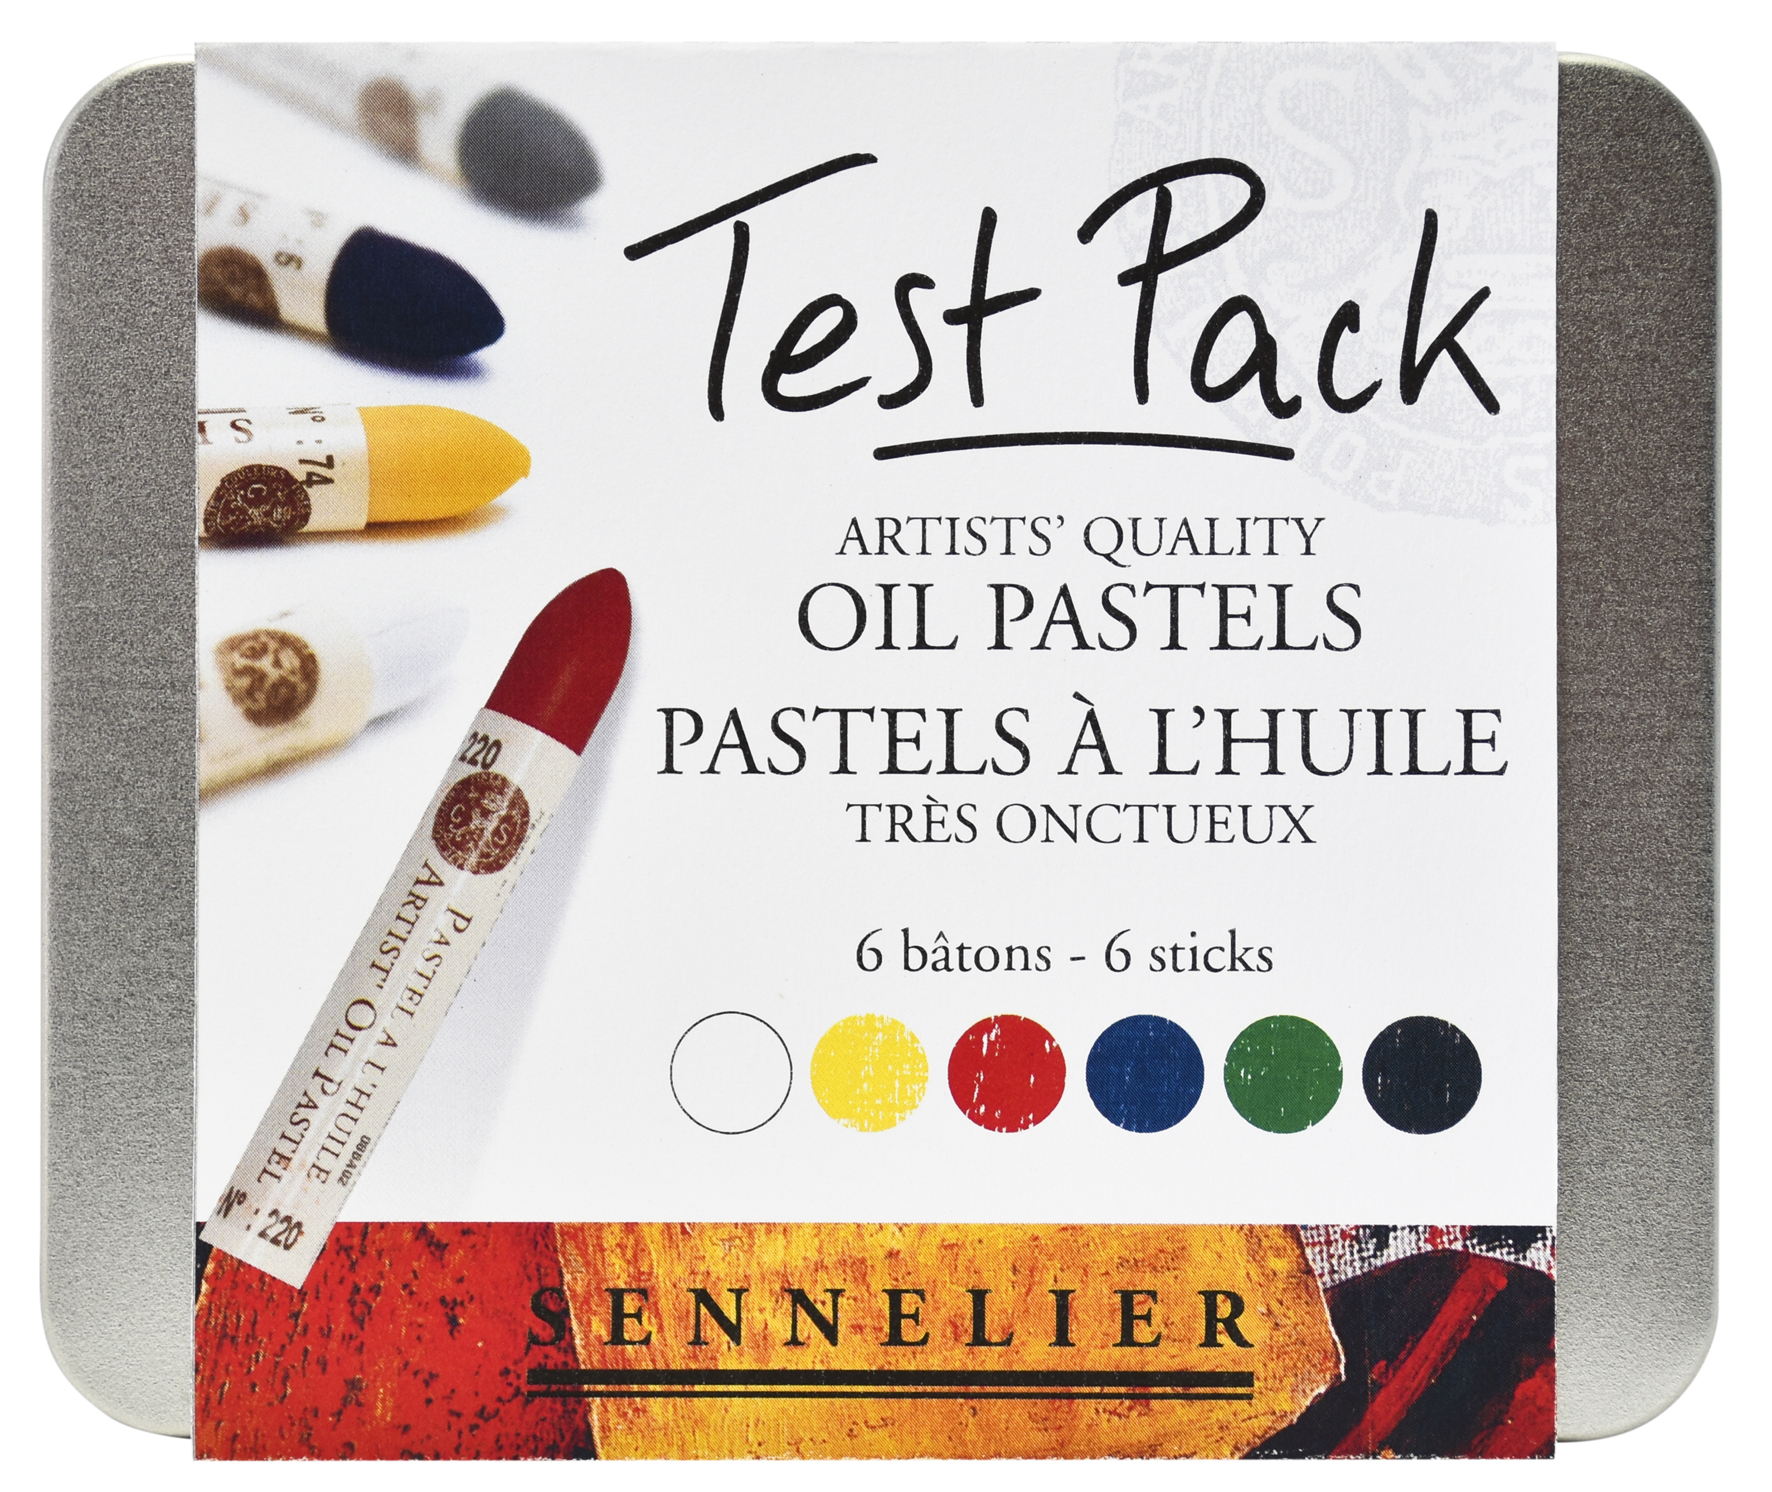 Sennelier Colour TEST PACKs